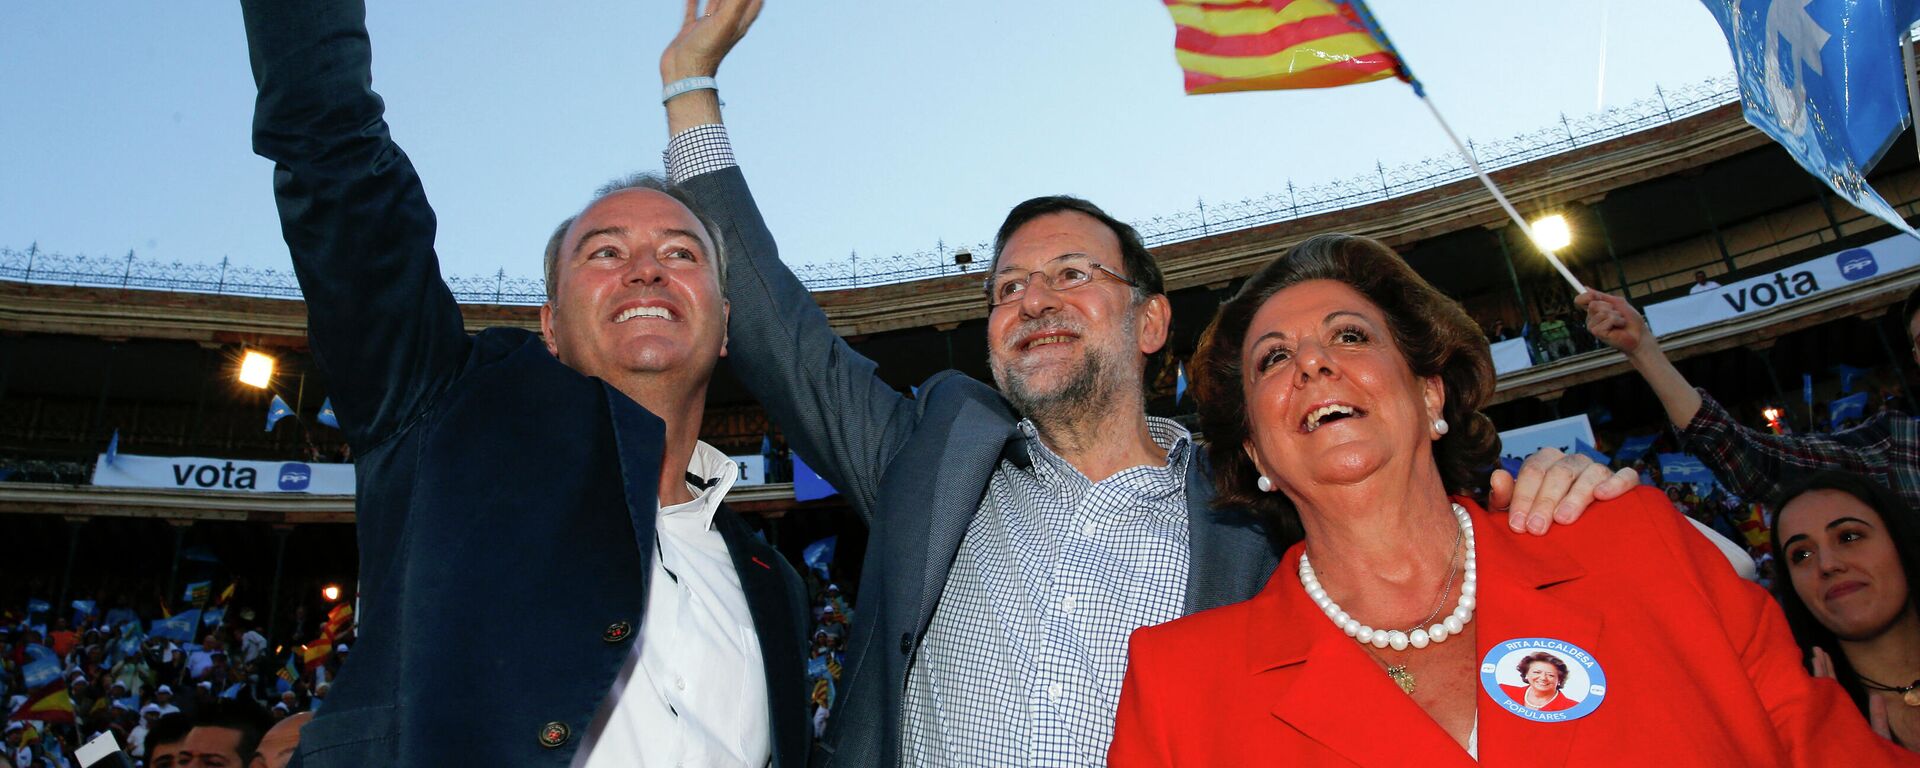 Rita Barberá, antigua alcaldesa de Valencia, con Alberto Fabra, líder autonómico, y Mariano Rajoy, expresidente de Gobierno, en una imagen de 2015 - Sputnik Mundo, 1920, 09.11.2021